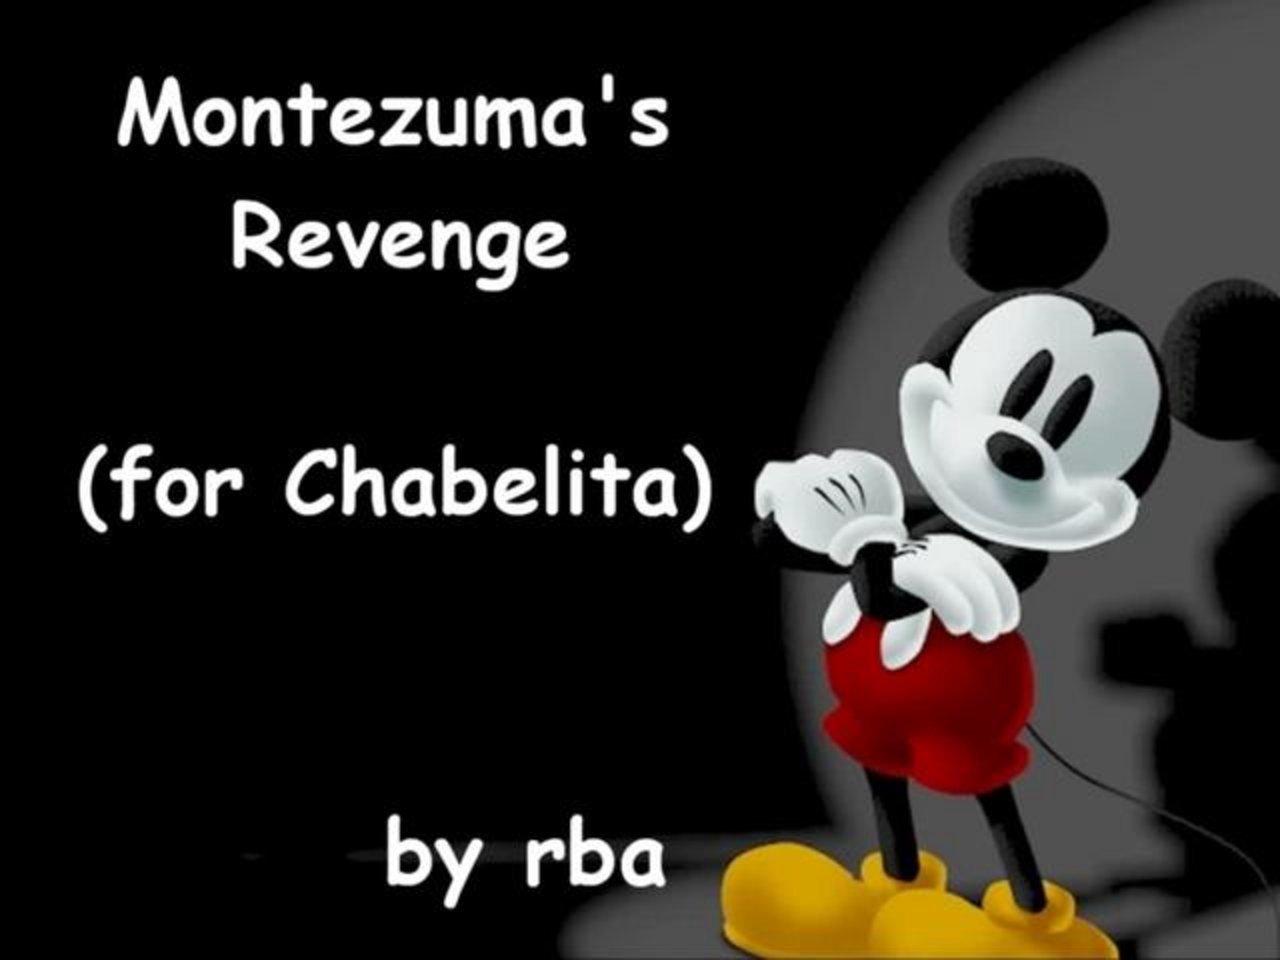 HD - Montezuma's Revenge (for Chabelita)